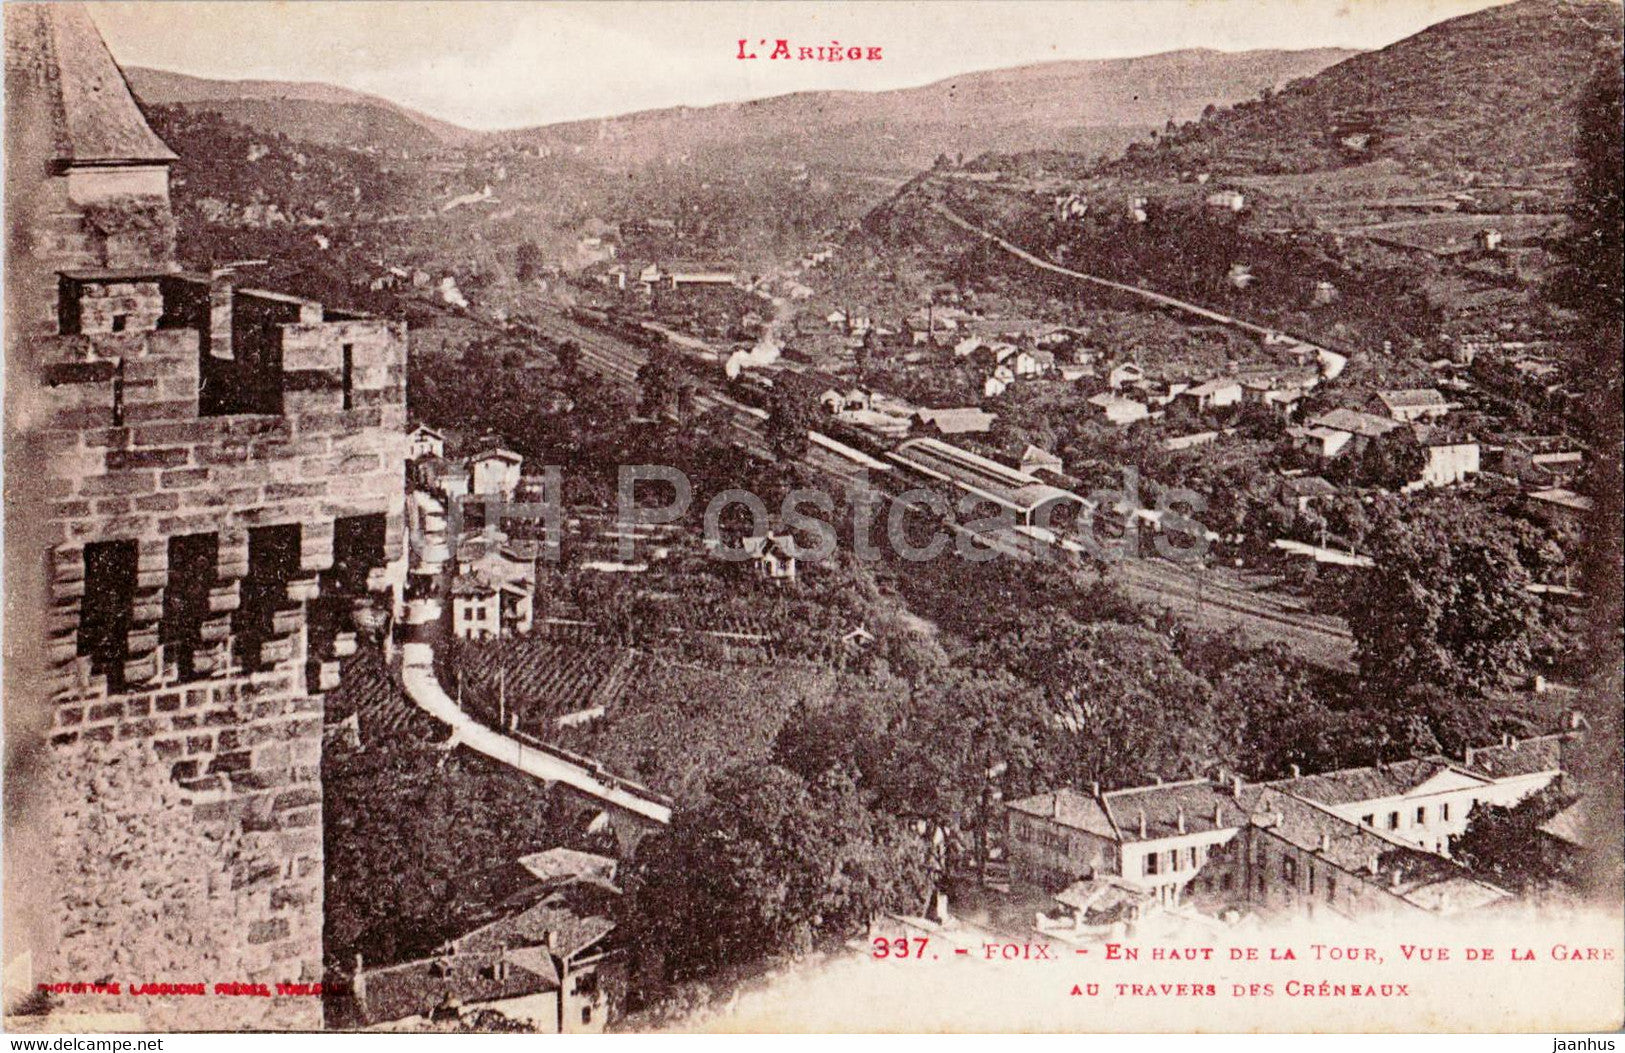 Foix - En Haut de la Tour - Vue de la Gare Au Travers des Creneaux - 337 - old postcard - France - unused - JH Postcards